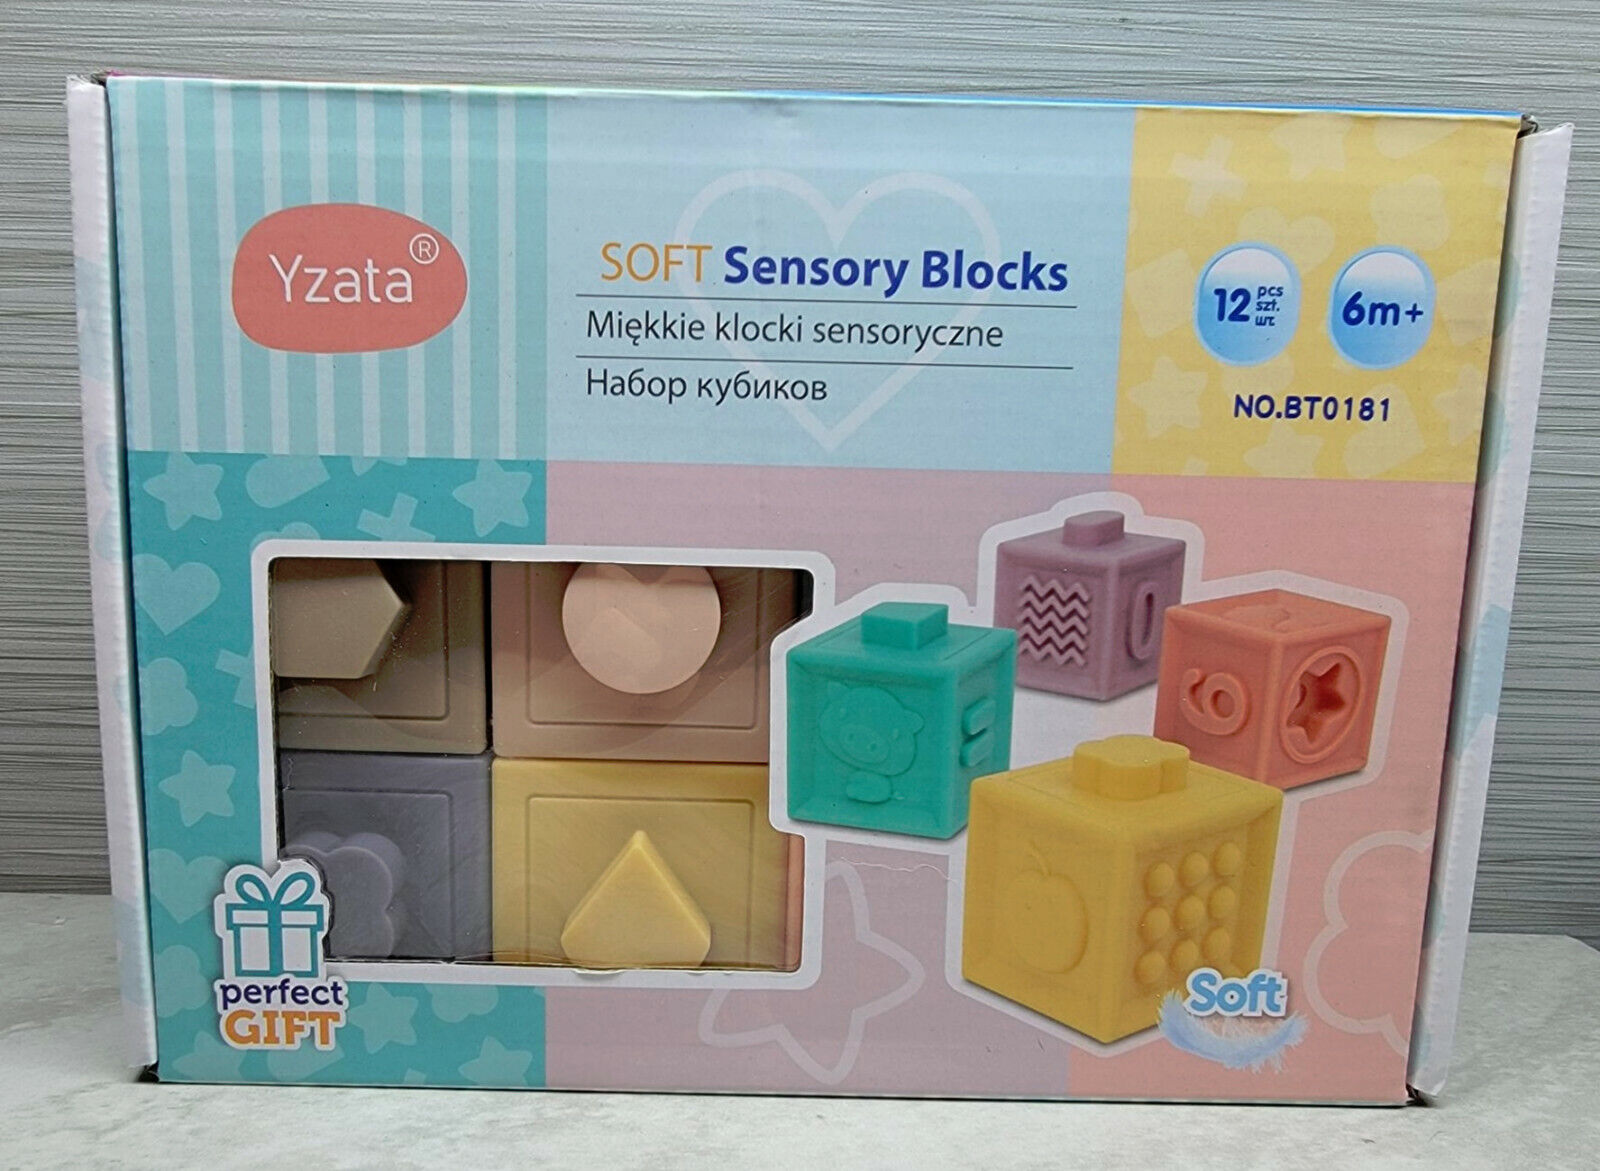 Montessori-style Soft Stacking Baby Blocks